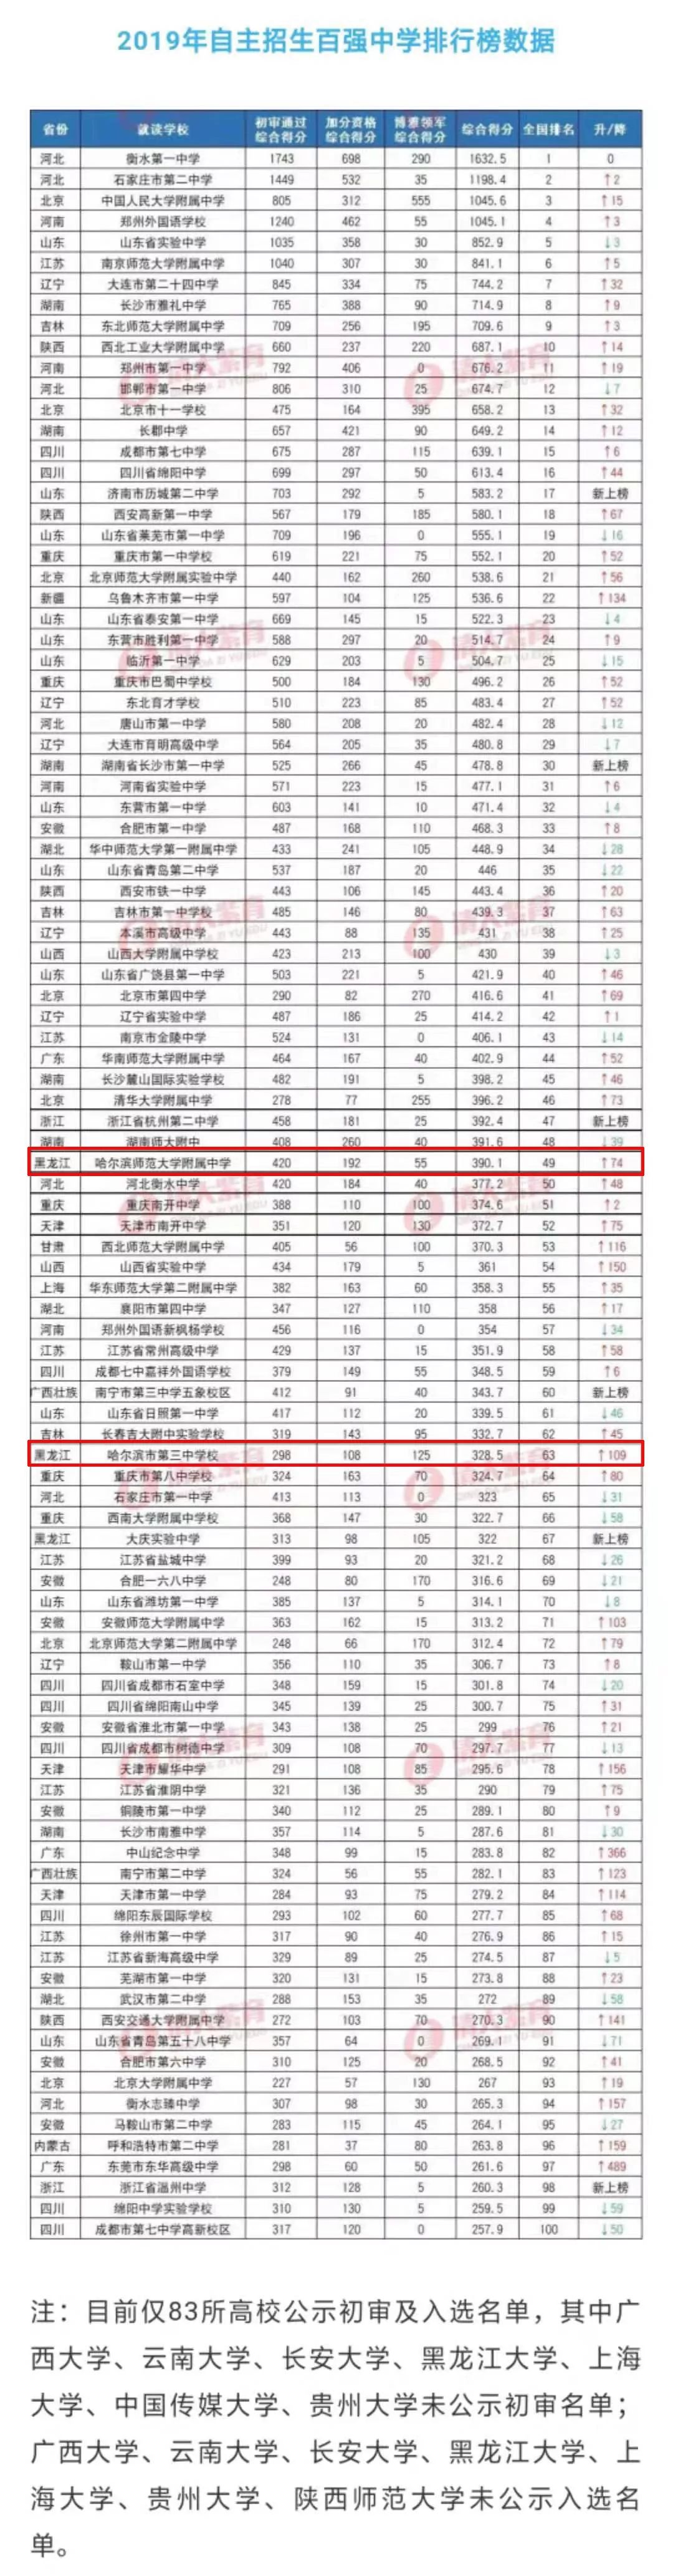 2014中国高中排行榜_中国福布斯2014富豪榜_中国女性富豪榜排行